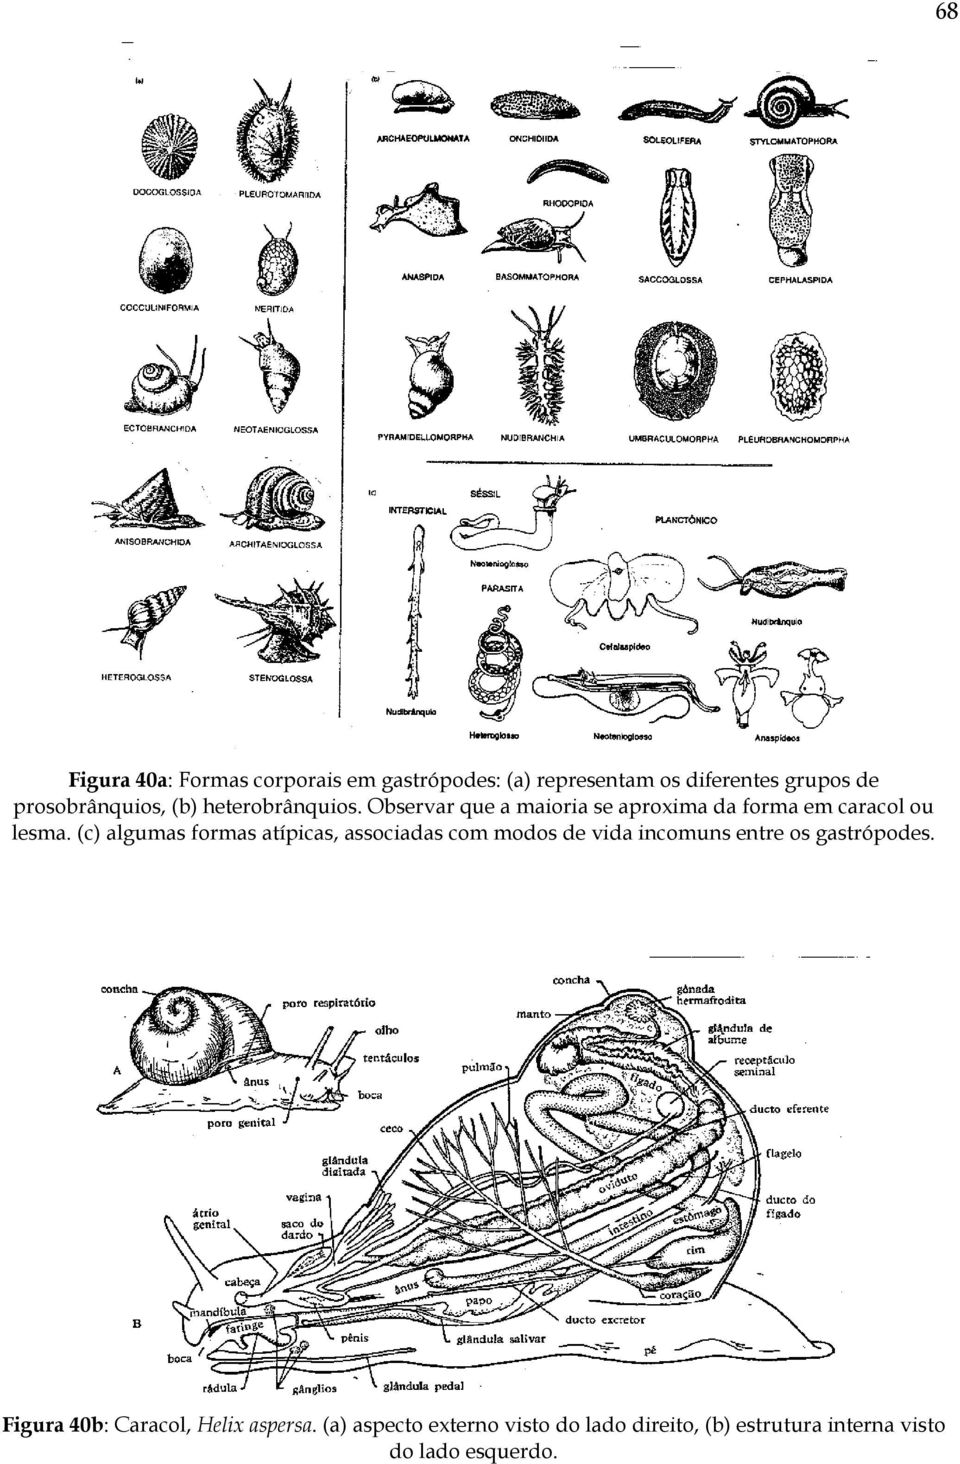 (c) algumas formas atípicas, associadas com modos de vida incomuns entre os gastrópodes.